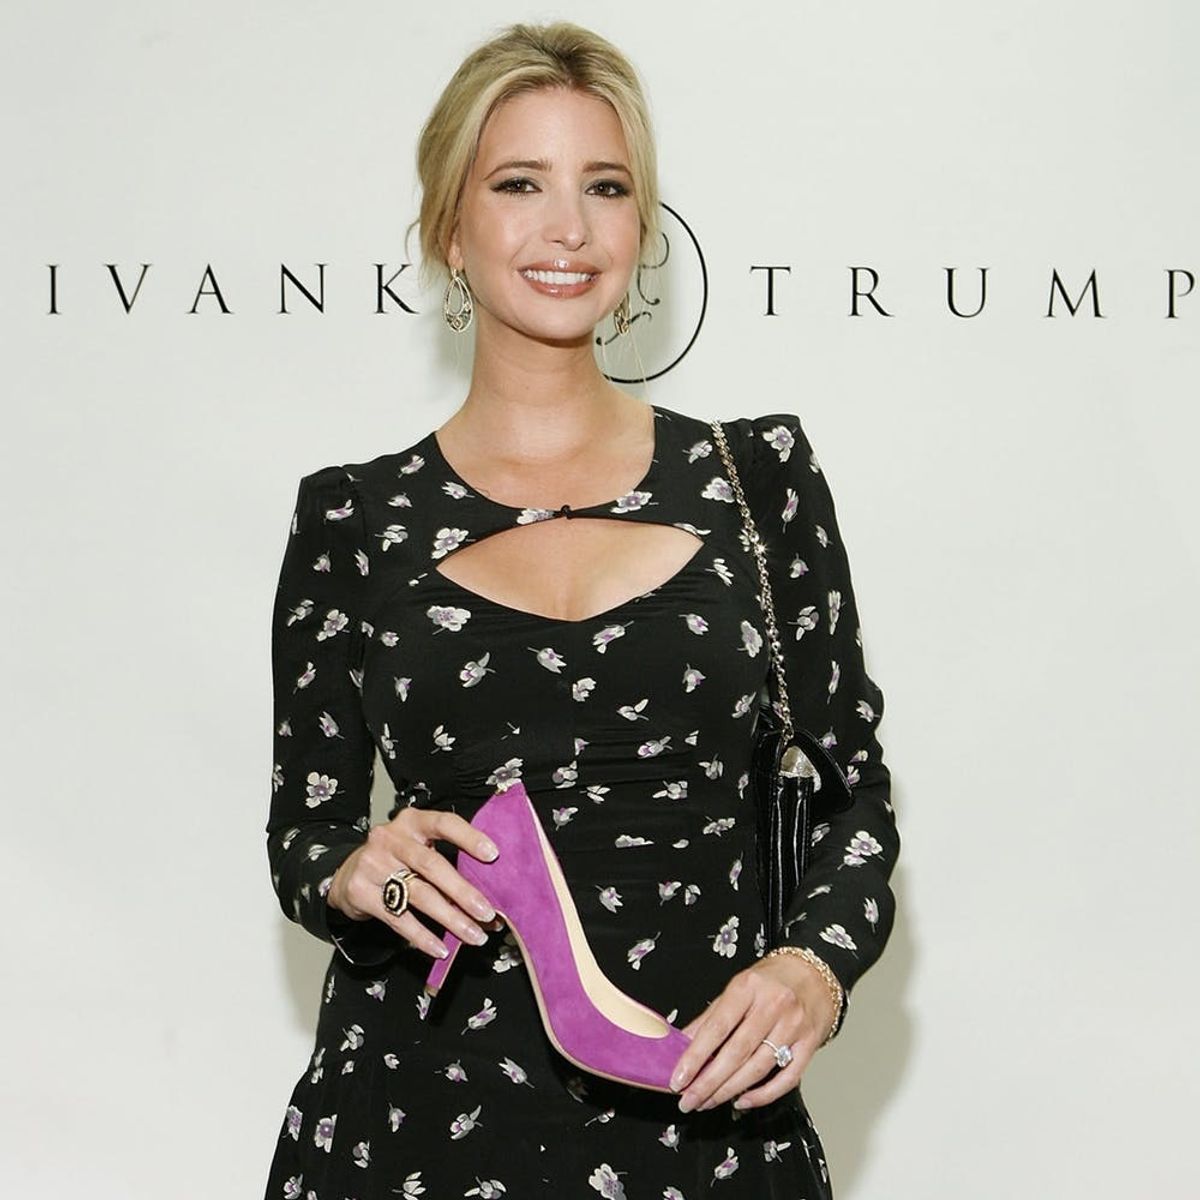 Ivanka Trump Is Shuttering Her Namesake Brand